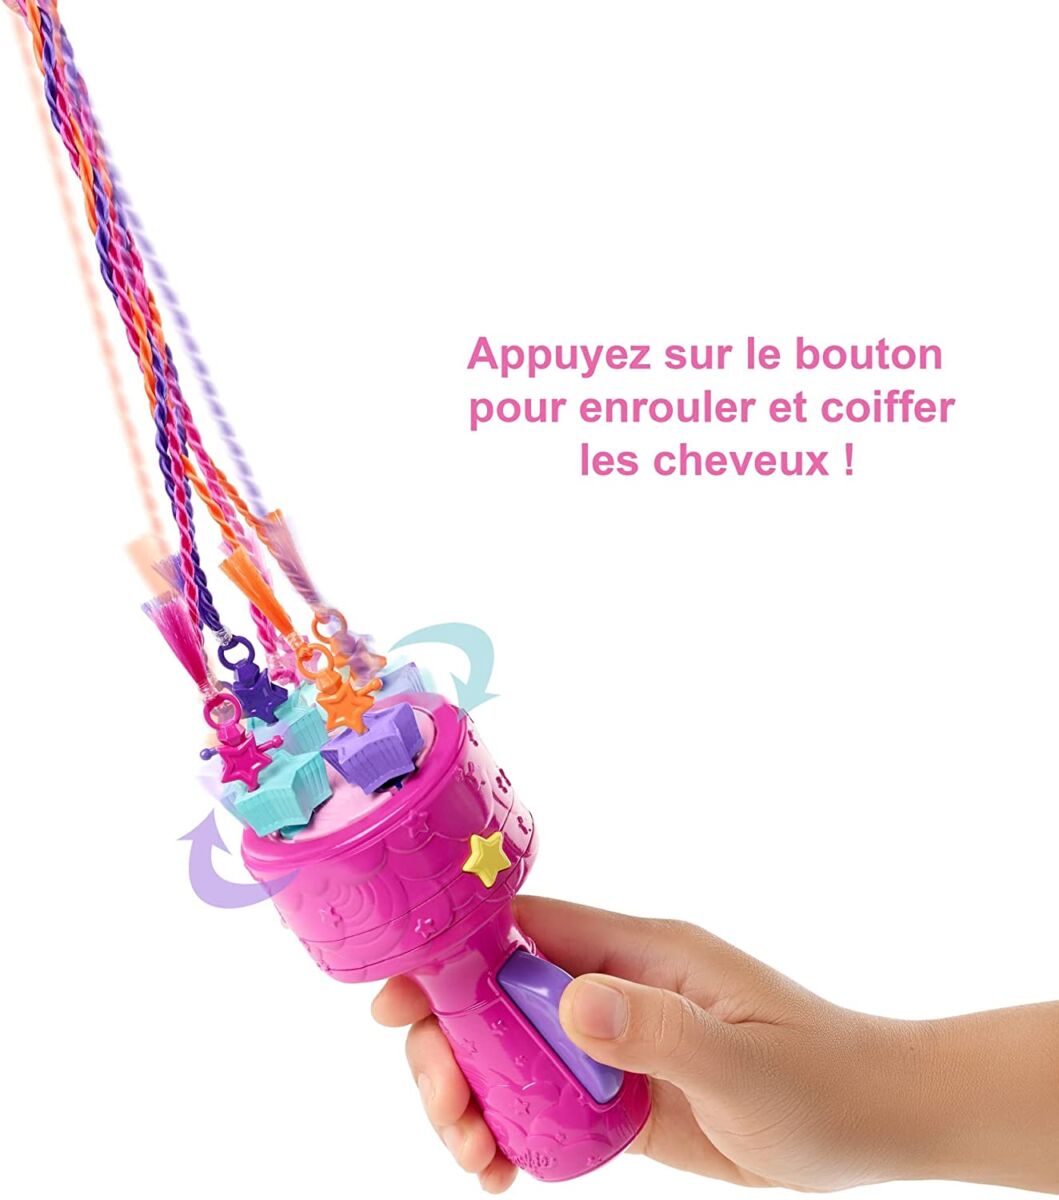  Barbie Dreamtopia poupée Princesse Tresses Magiques avec extensions multicolores